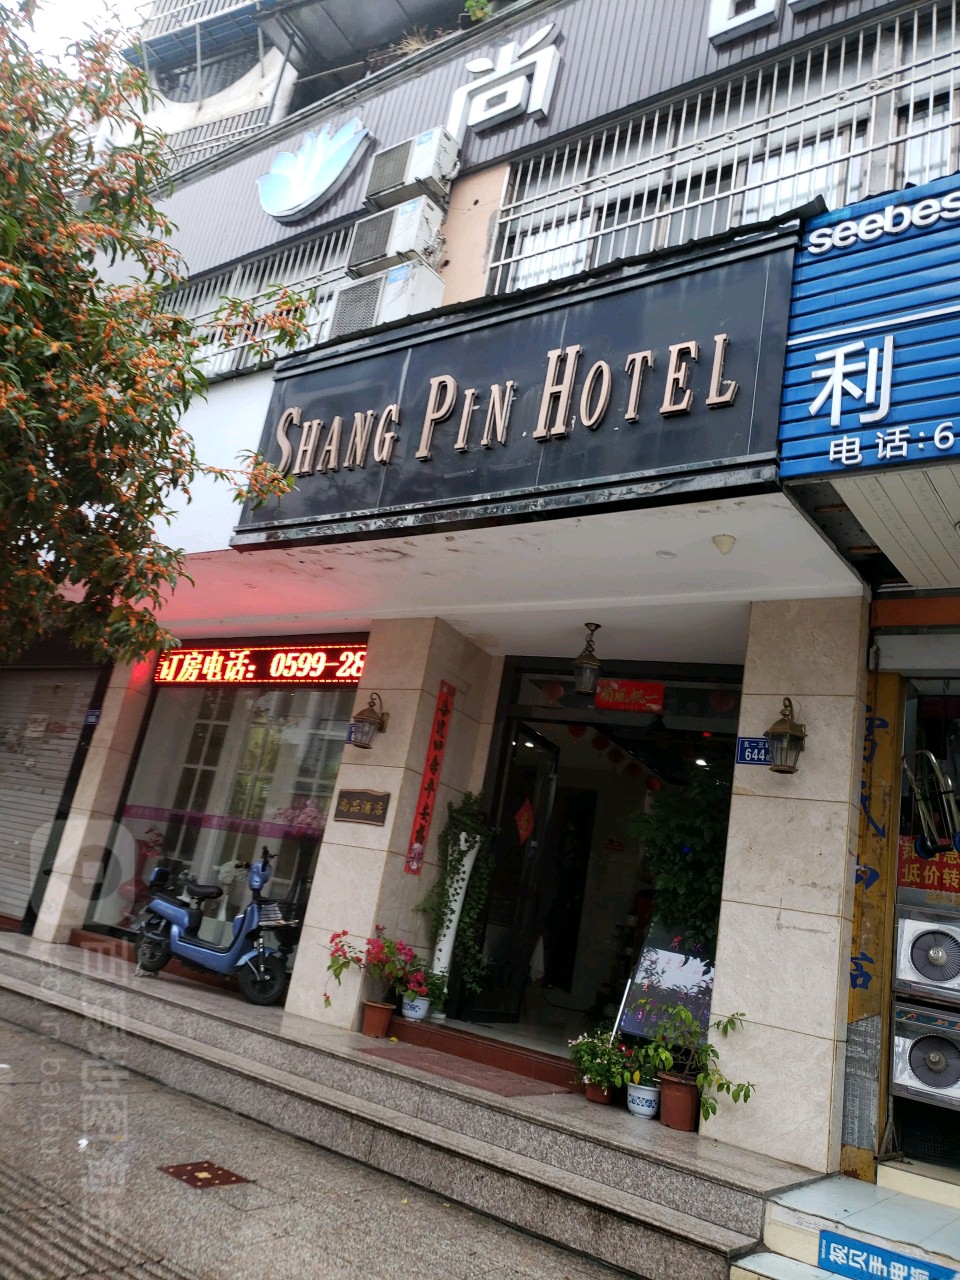 SHANG PIN HOTEL